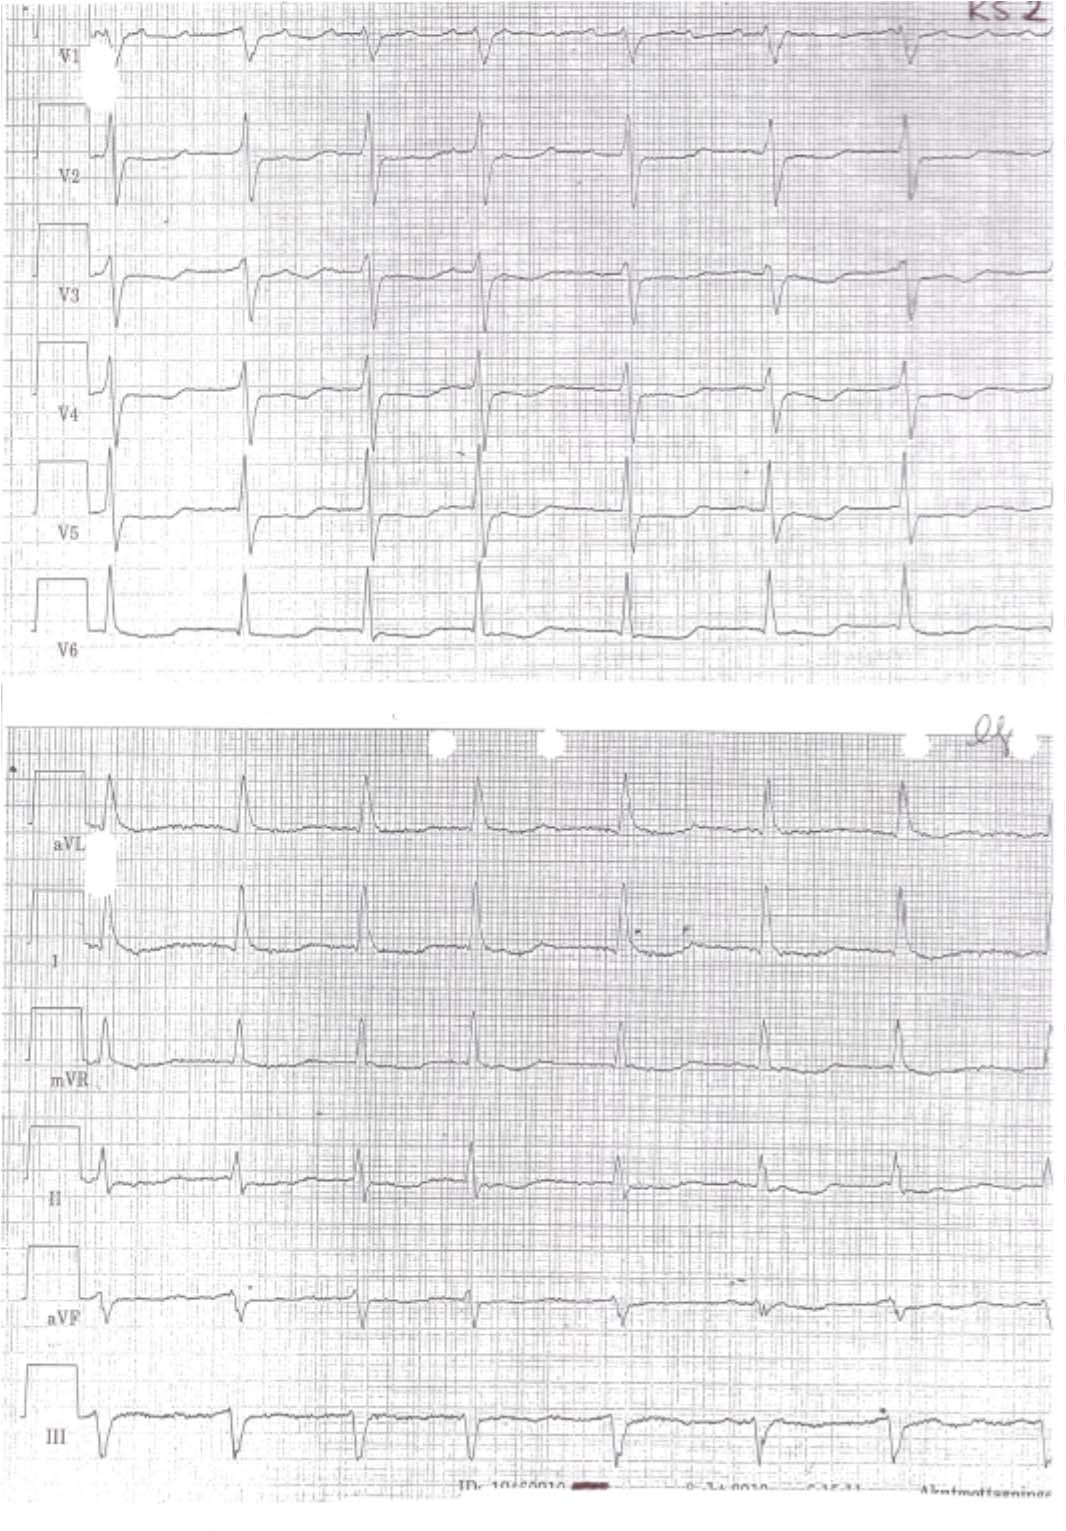 5 EKG KS2